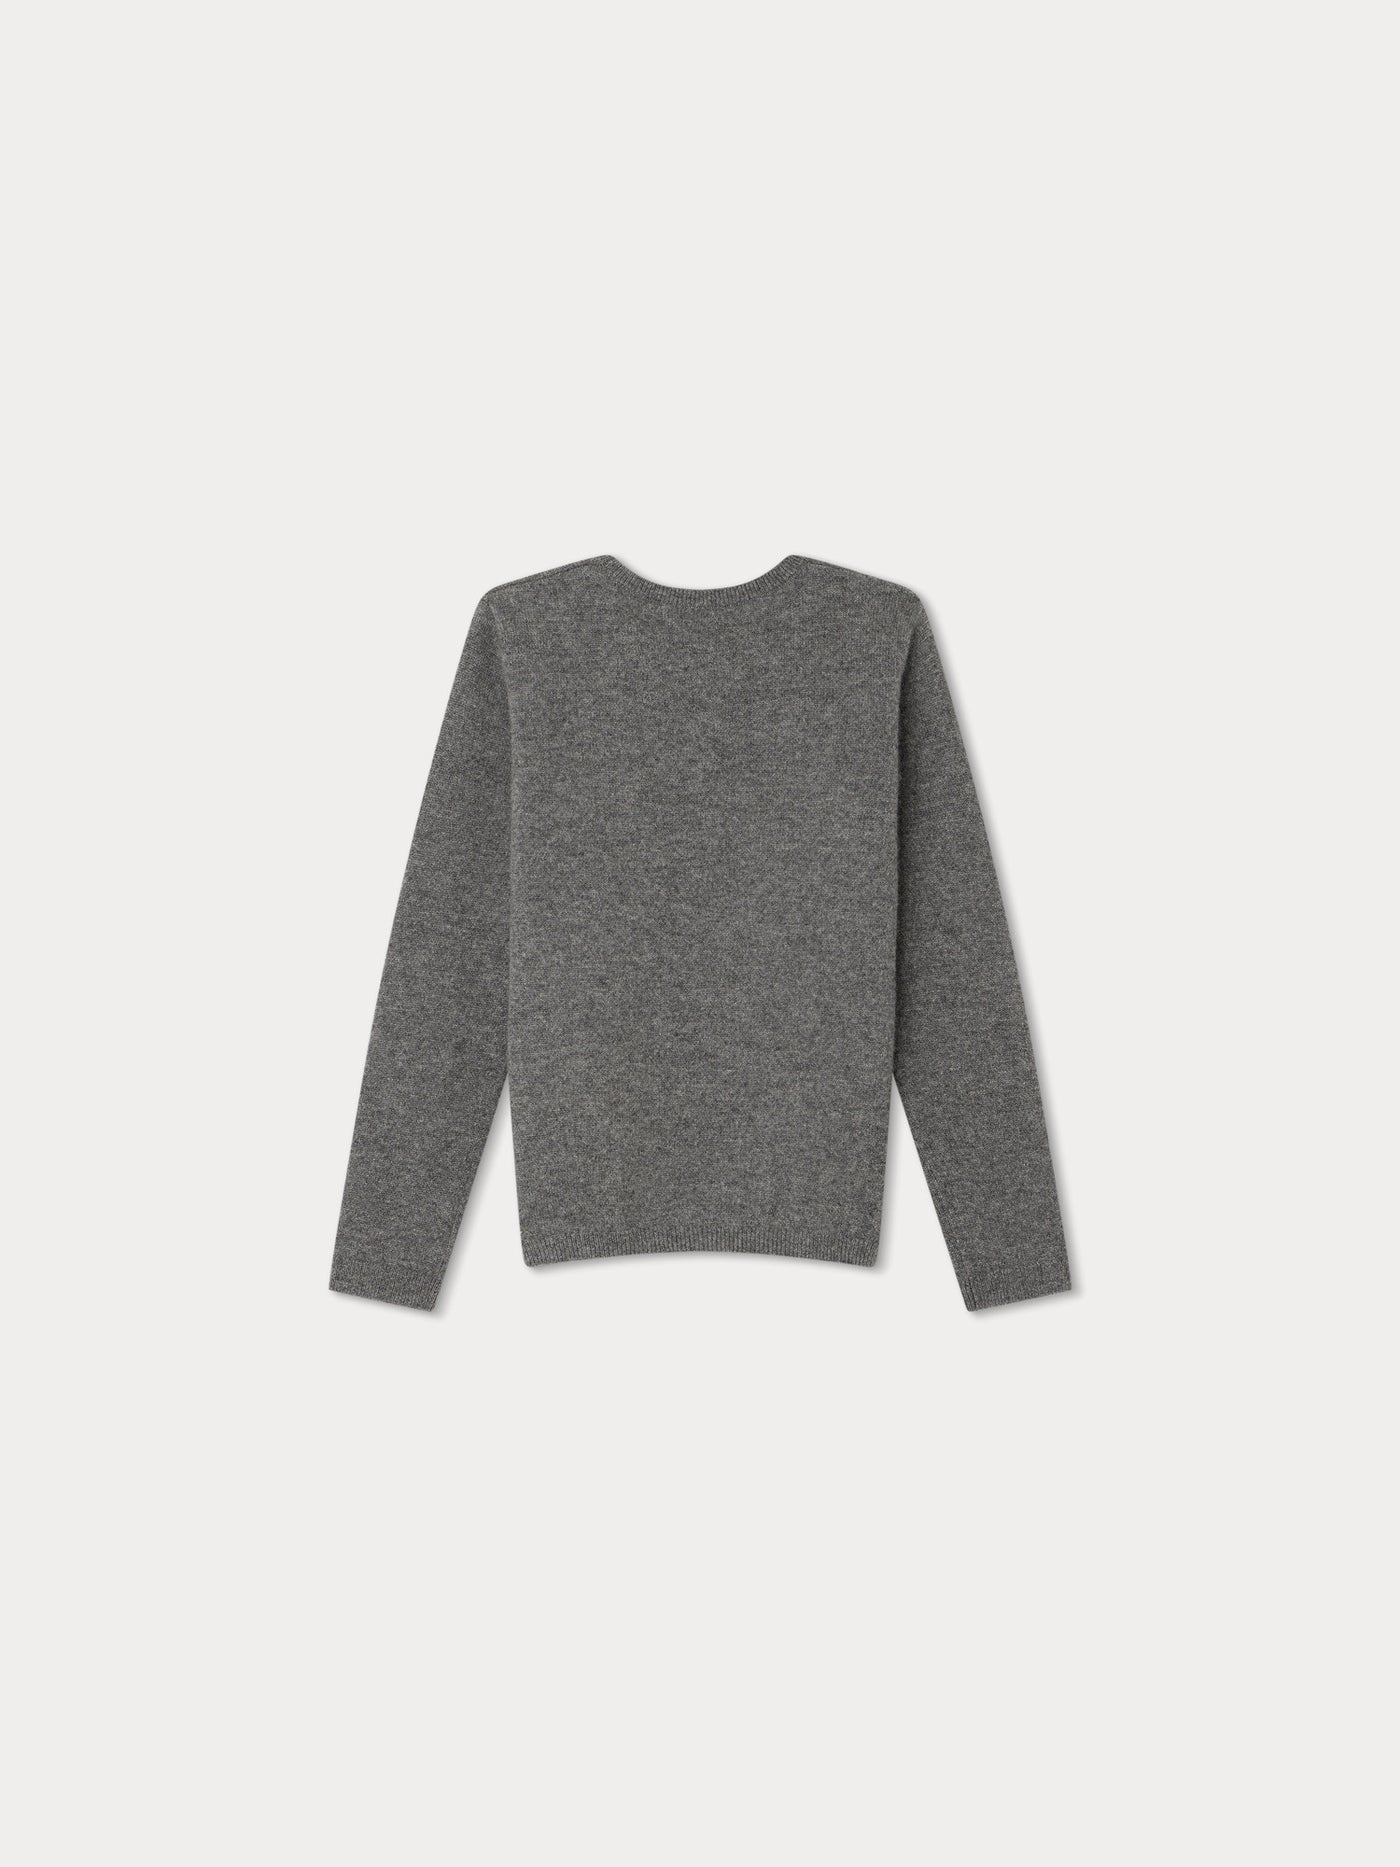 Brunelle Sweater dark heathered gray